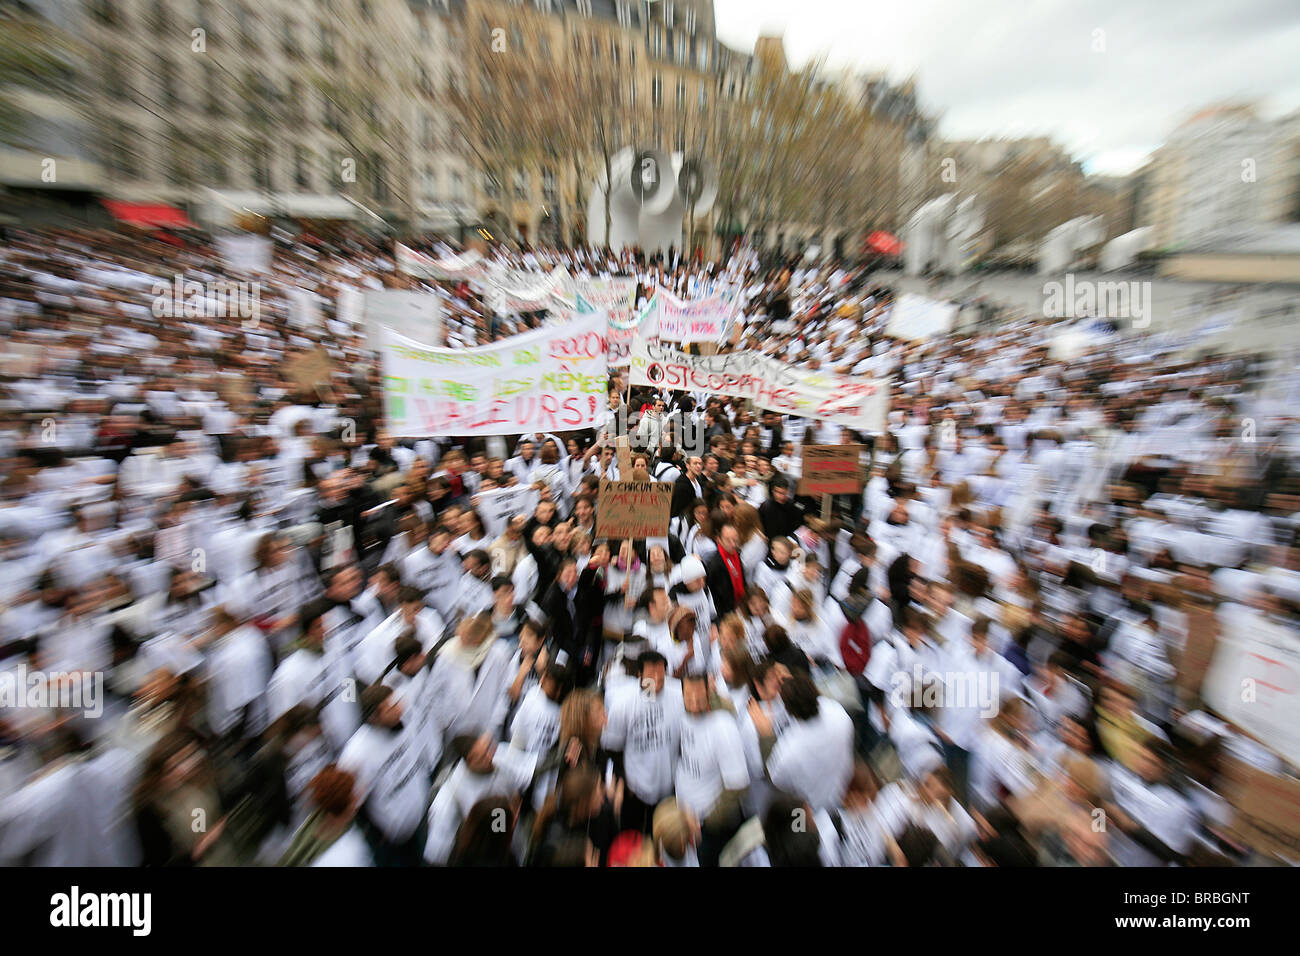 L'ostéopathie française étudiants qui manifestaient, Paris, France Banque D'Images